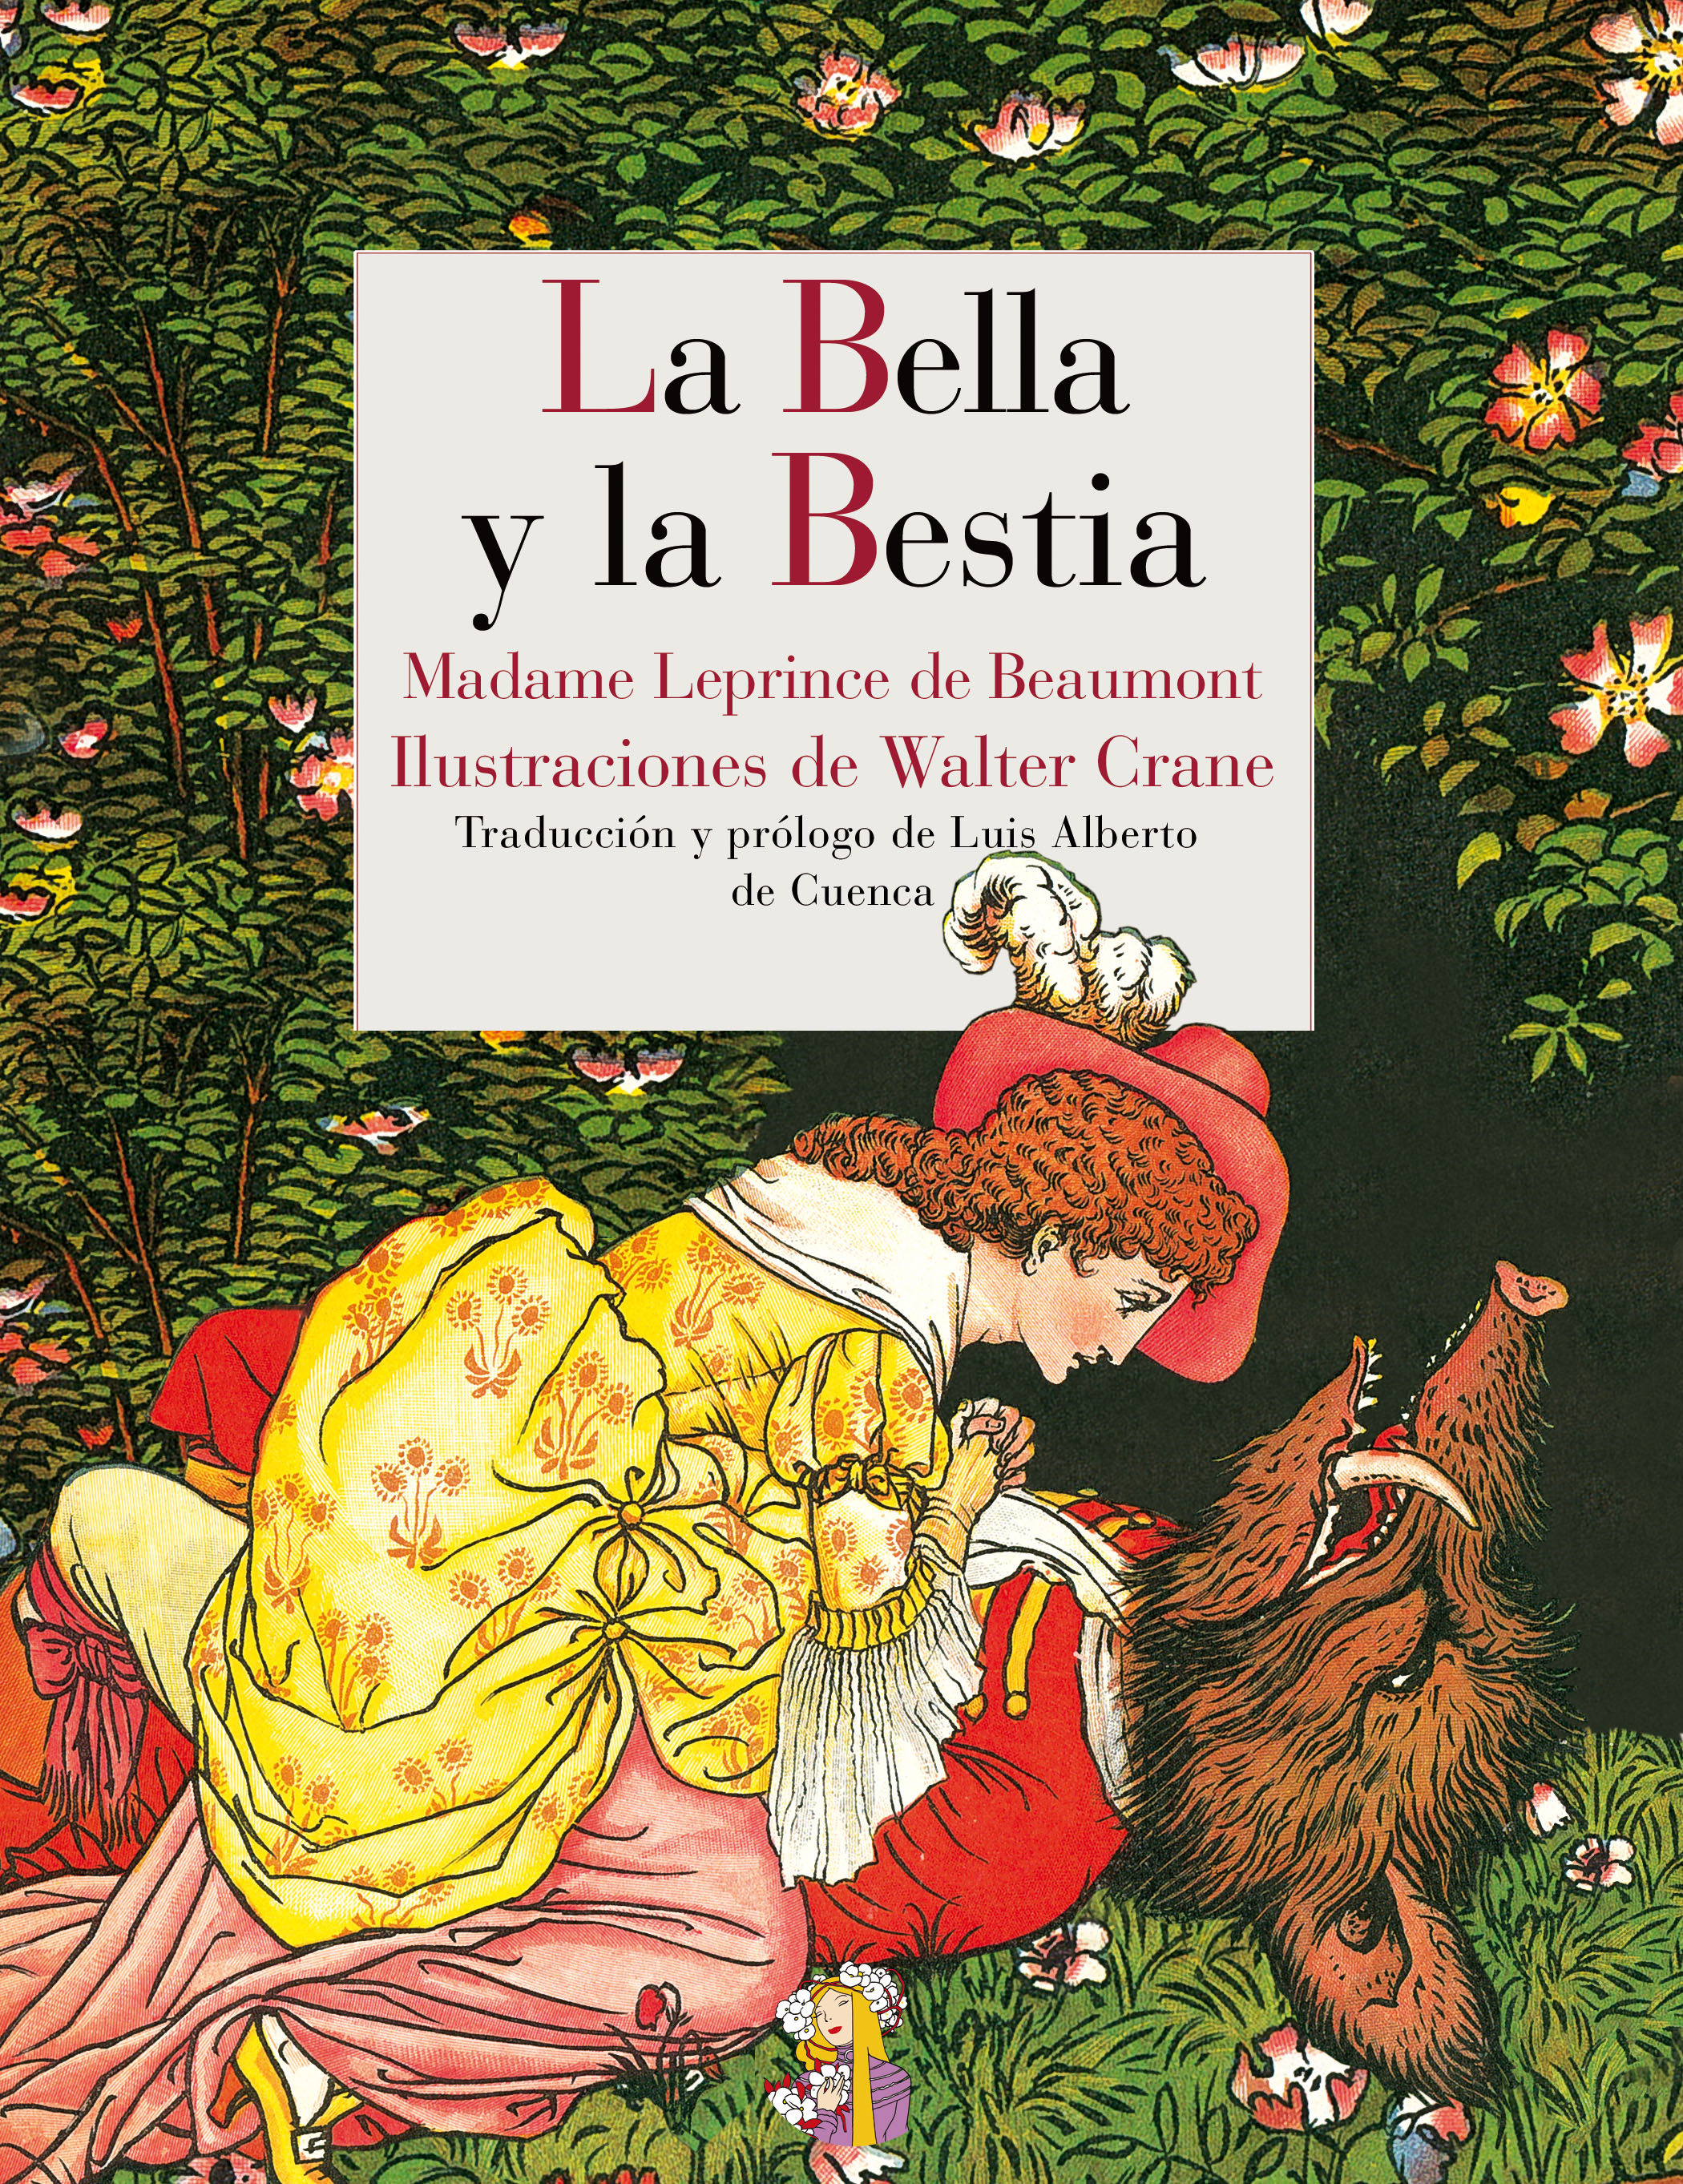 La Bella y la Bestia, Biblioteca Virtual Fandom